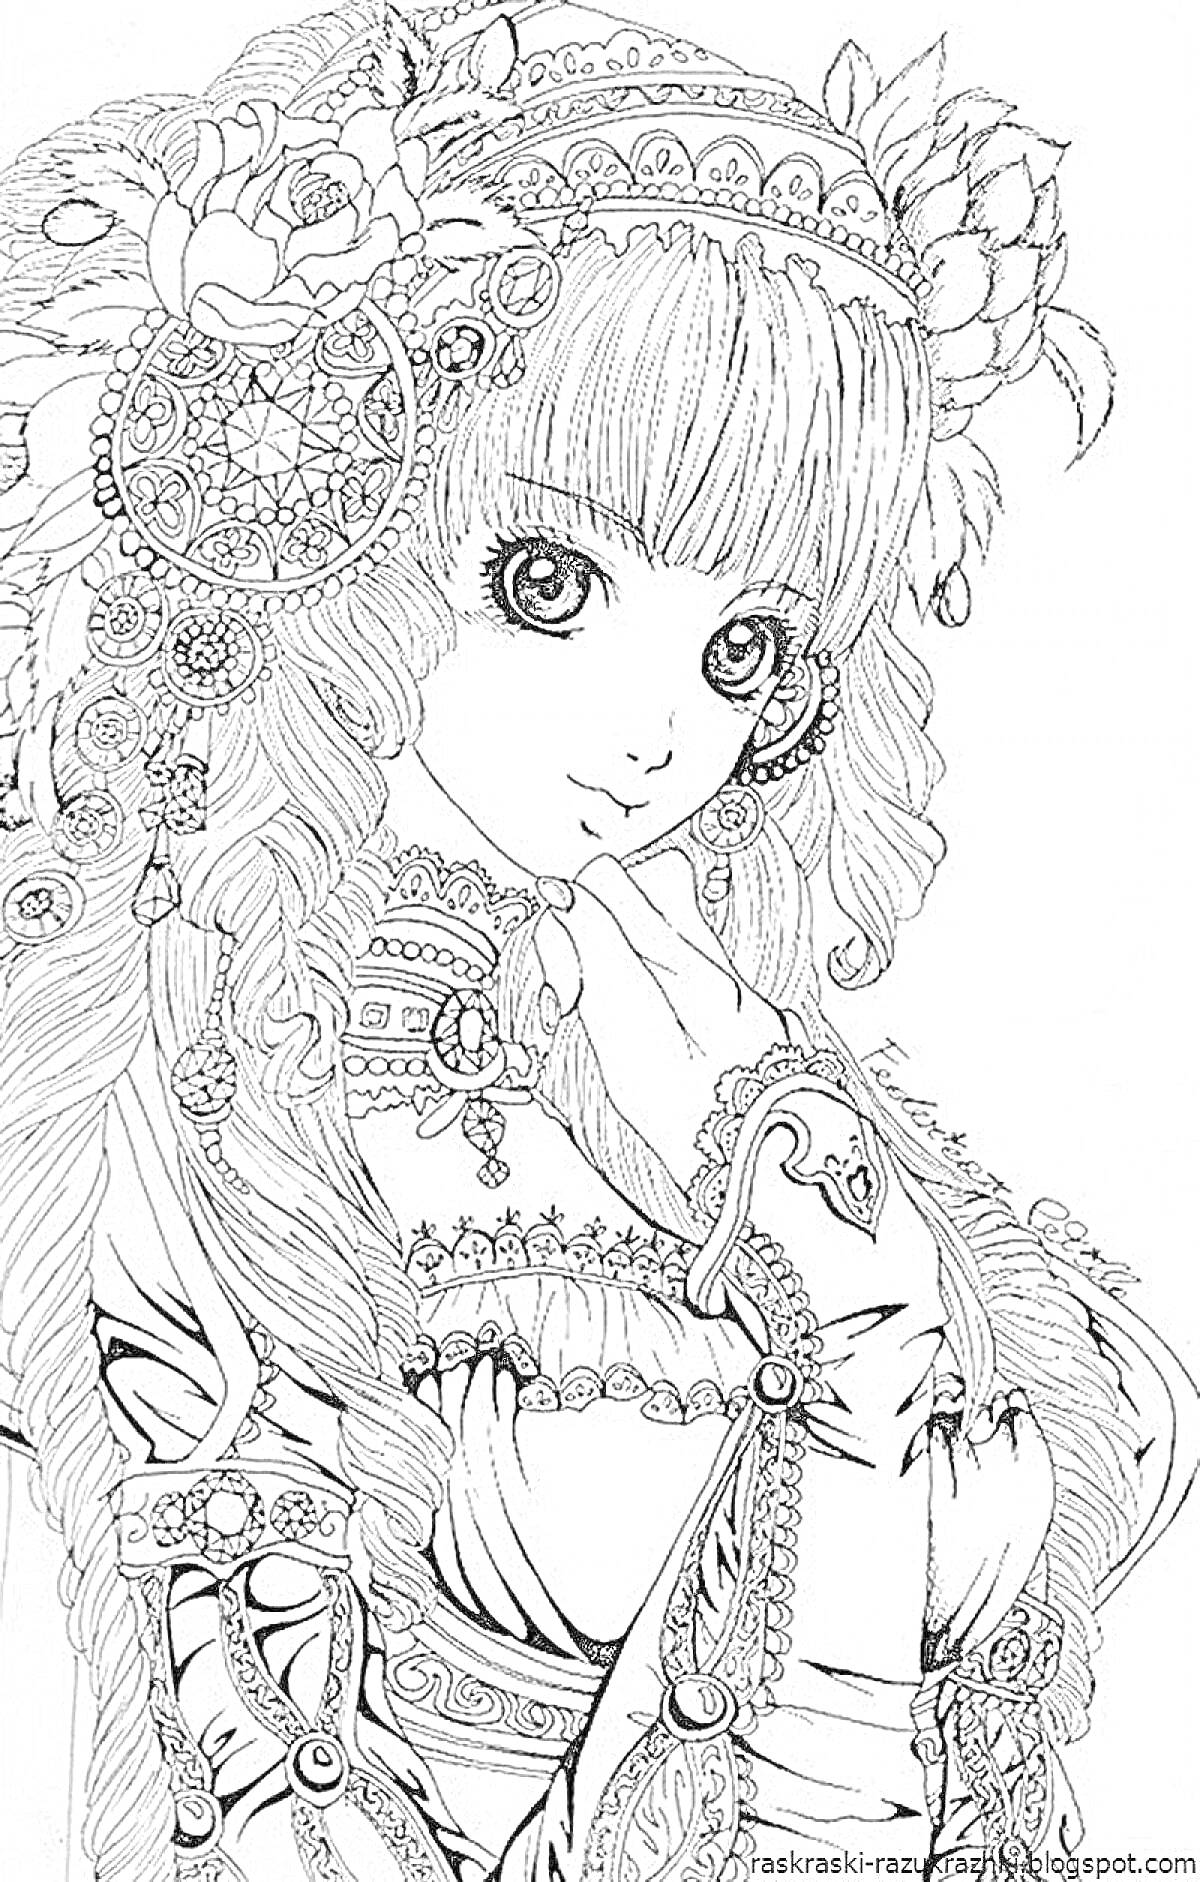 Раскраска девушка с длинными волосами, в сложном головном уборе с узорами и цветами, в декорированной одежде с орнаментами